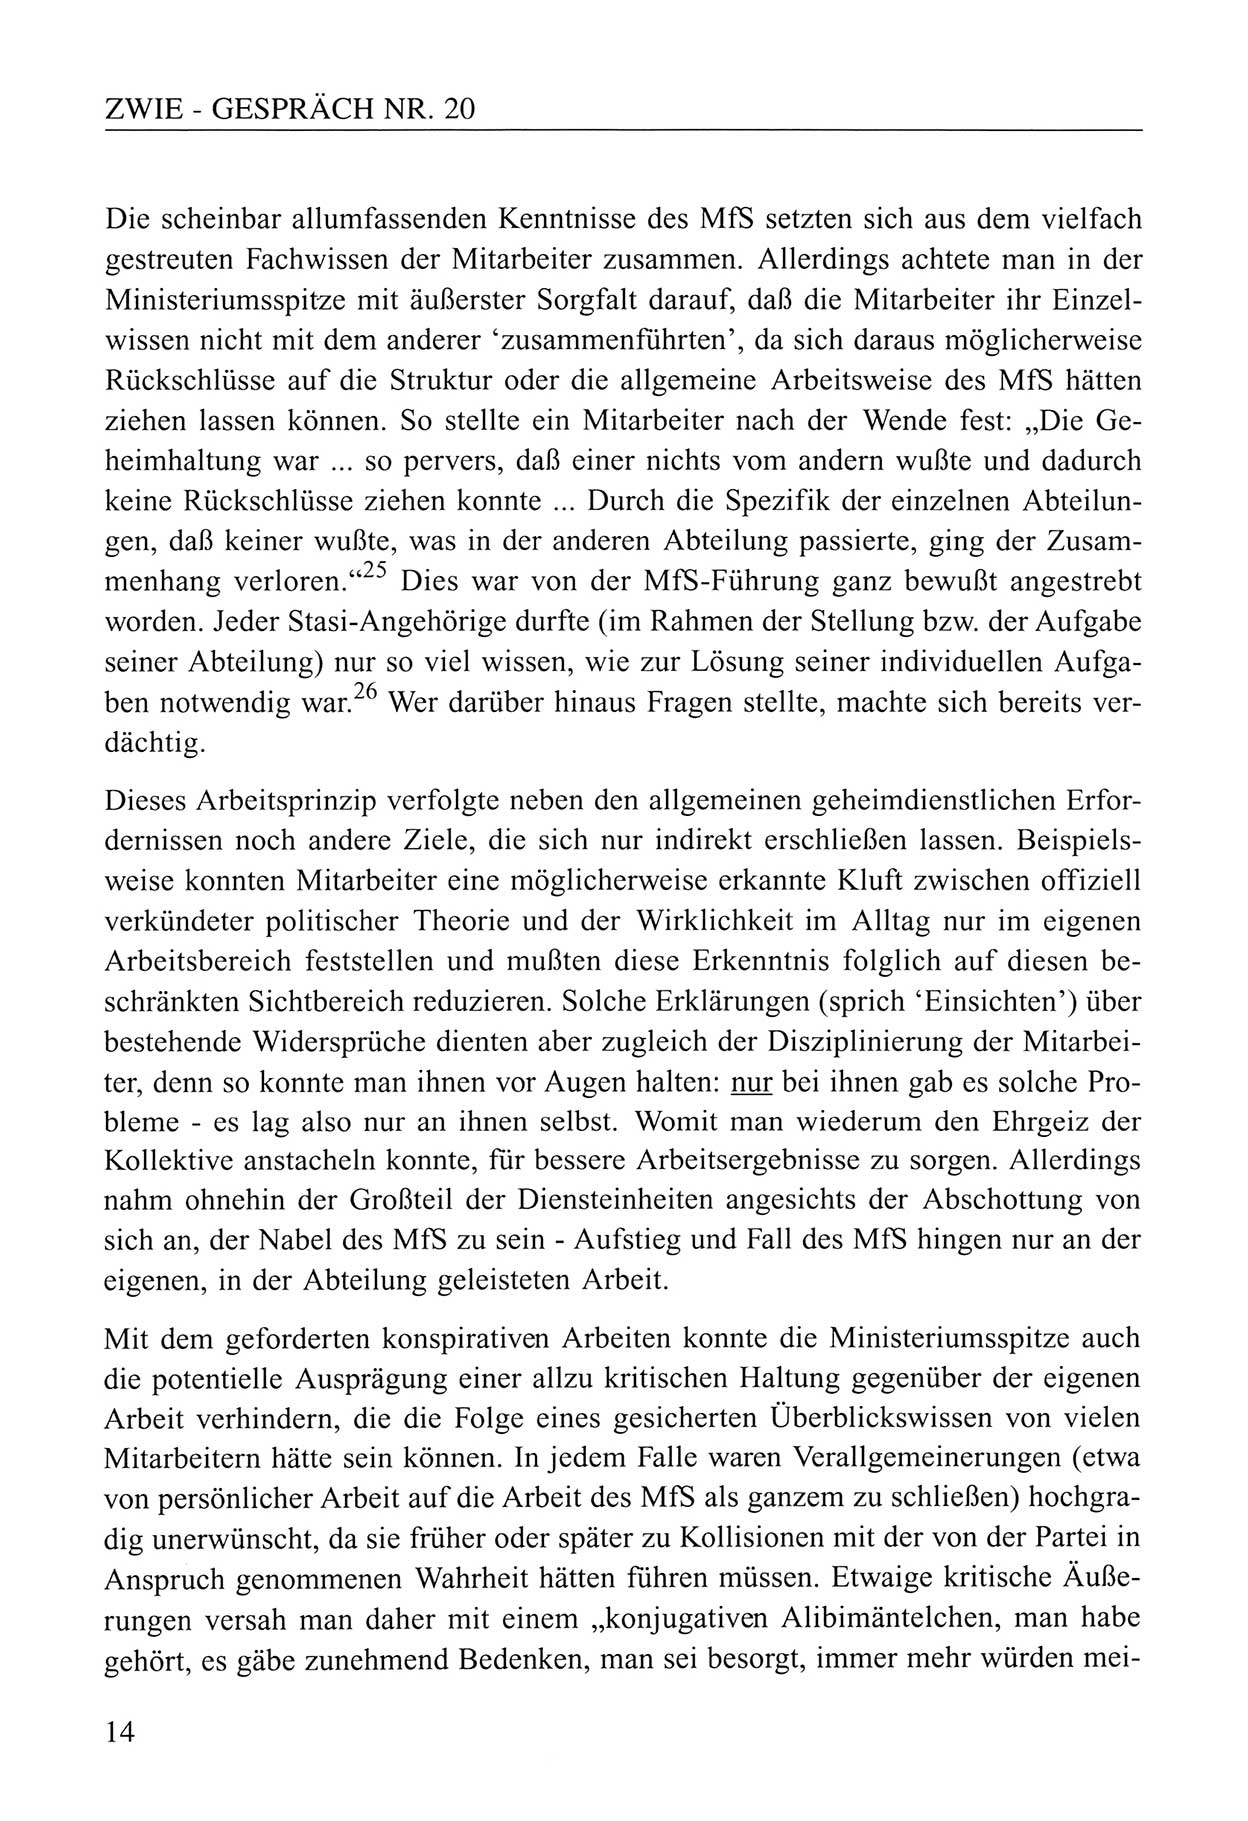 Zwie-Gespräch, Beiträge zum Umgang mit der Staatssicherheits-Vergangenheit [Deutsche Demokratische Republik (DDR)], Ausgabe Nr. 20, Berlin 1994, Seite 14 (Zwie-Gespr. Ausg. 20 1994, S. 14)